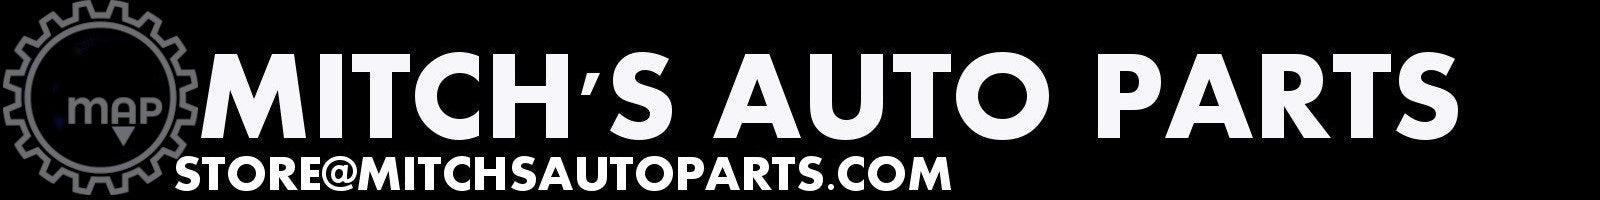 Mitch's Auto Parts Store@mitchsautoparts.com